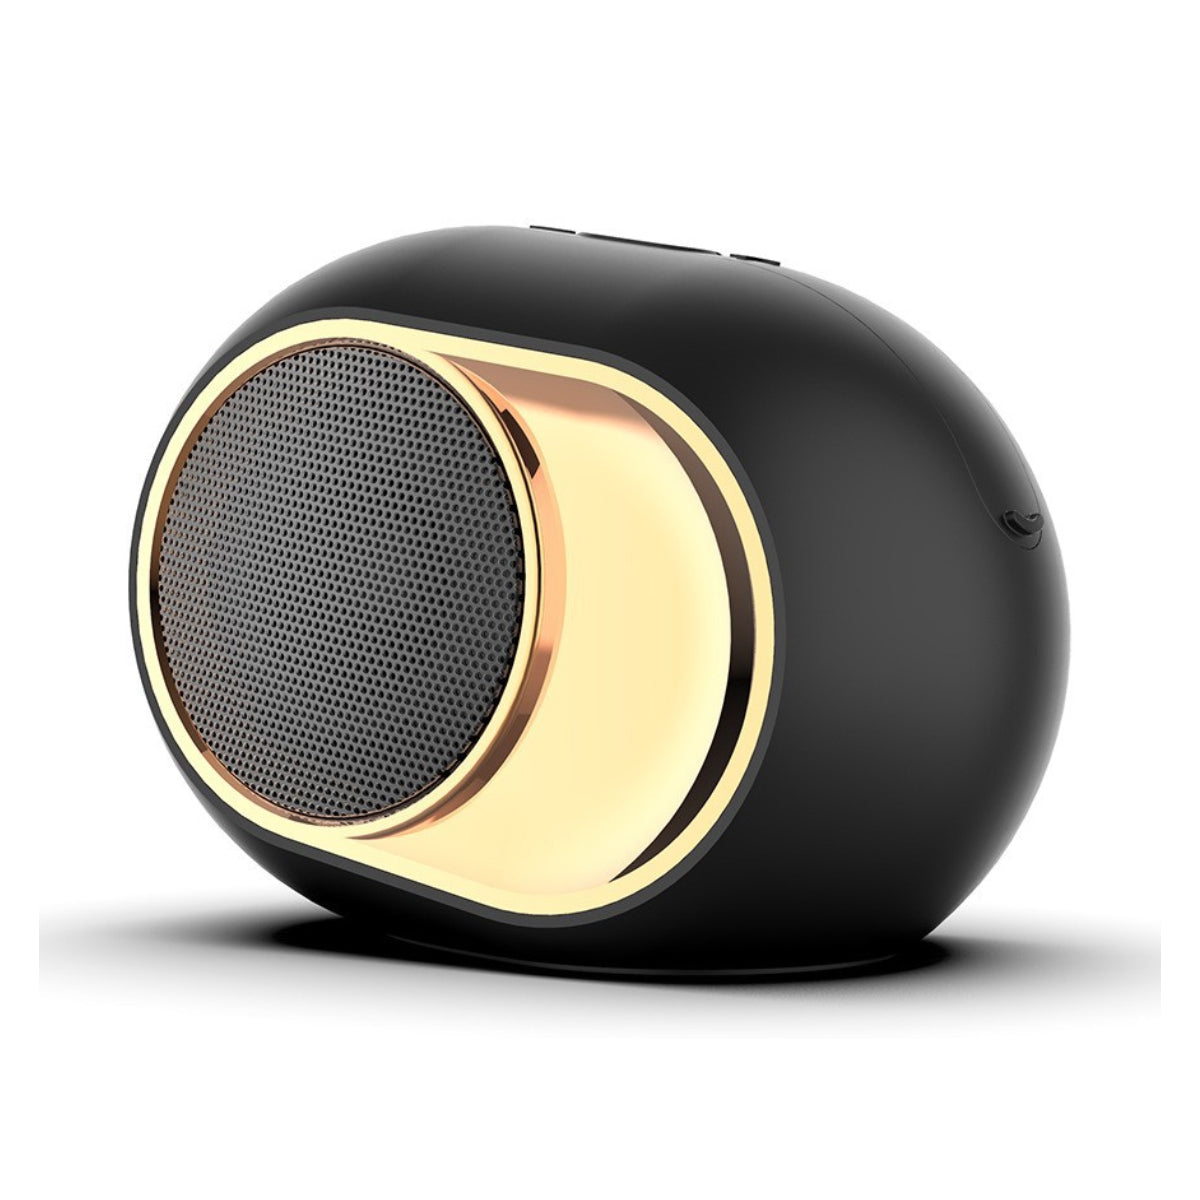 Olden Golden Bluetooth Speaker - 13208674_large_3dfa86c9-27af-41d9-8fa2-3f88292fd2b3